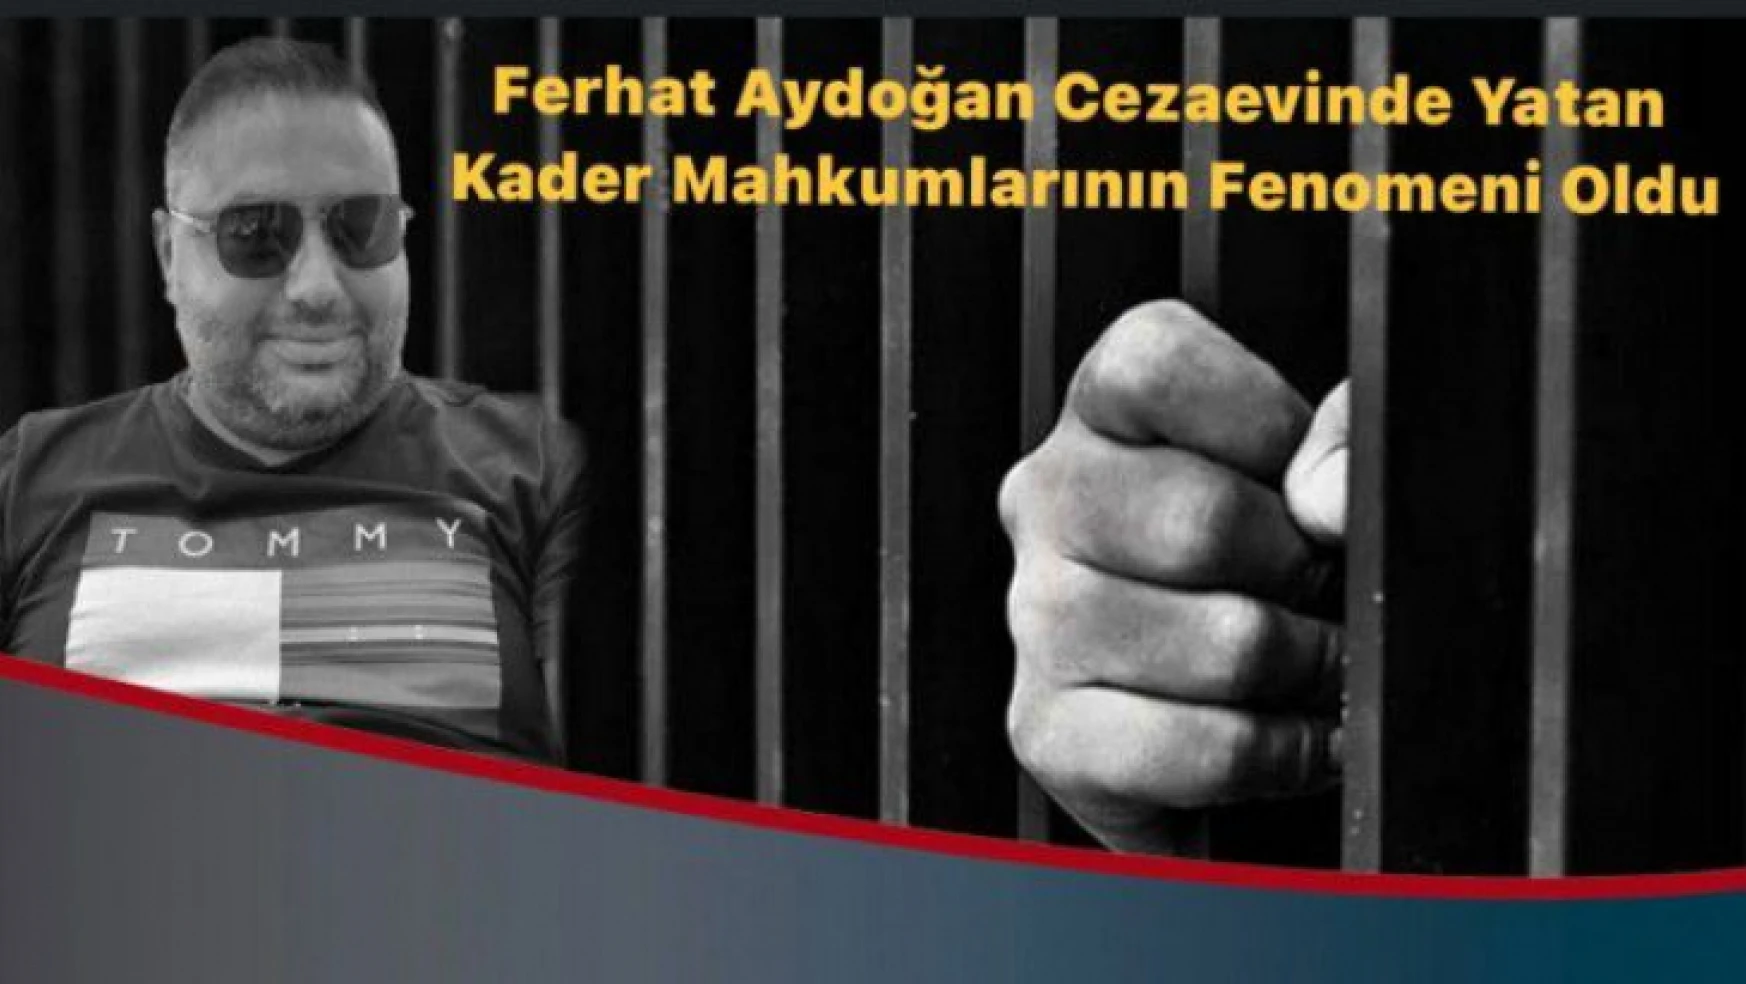 Cezaevindeki Mahkumların Fenomeni Ferhat Aydoğan